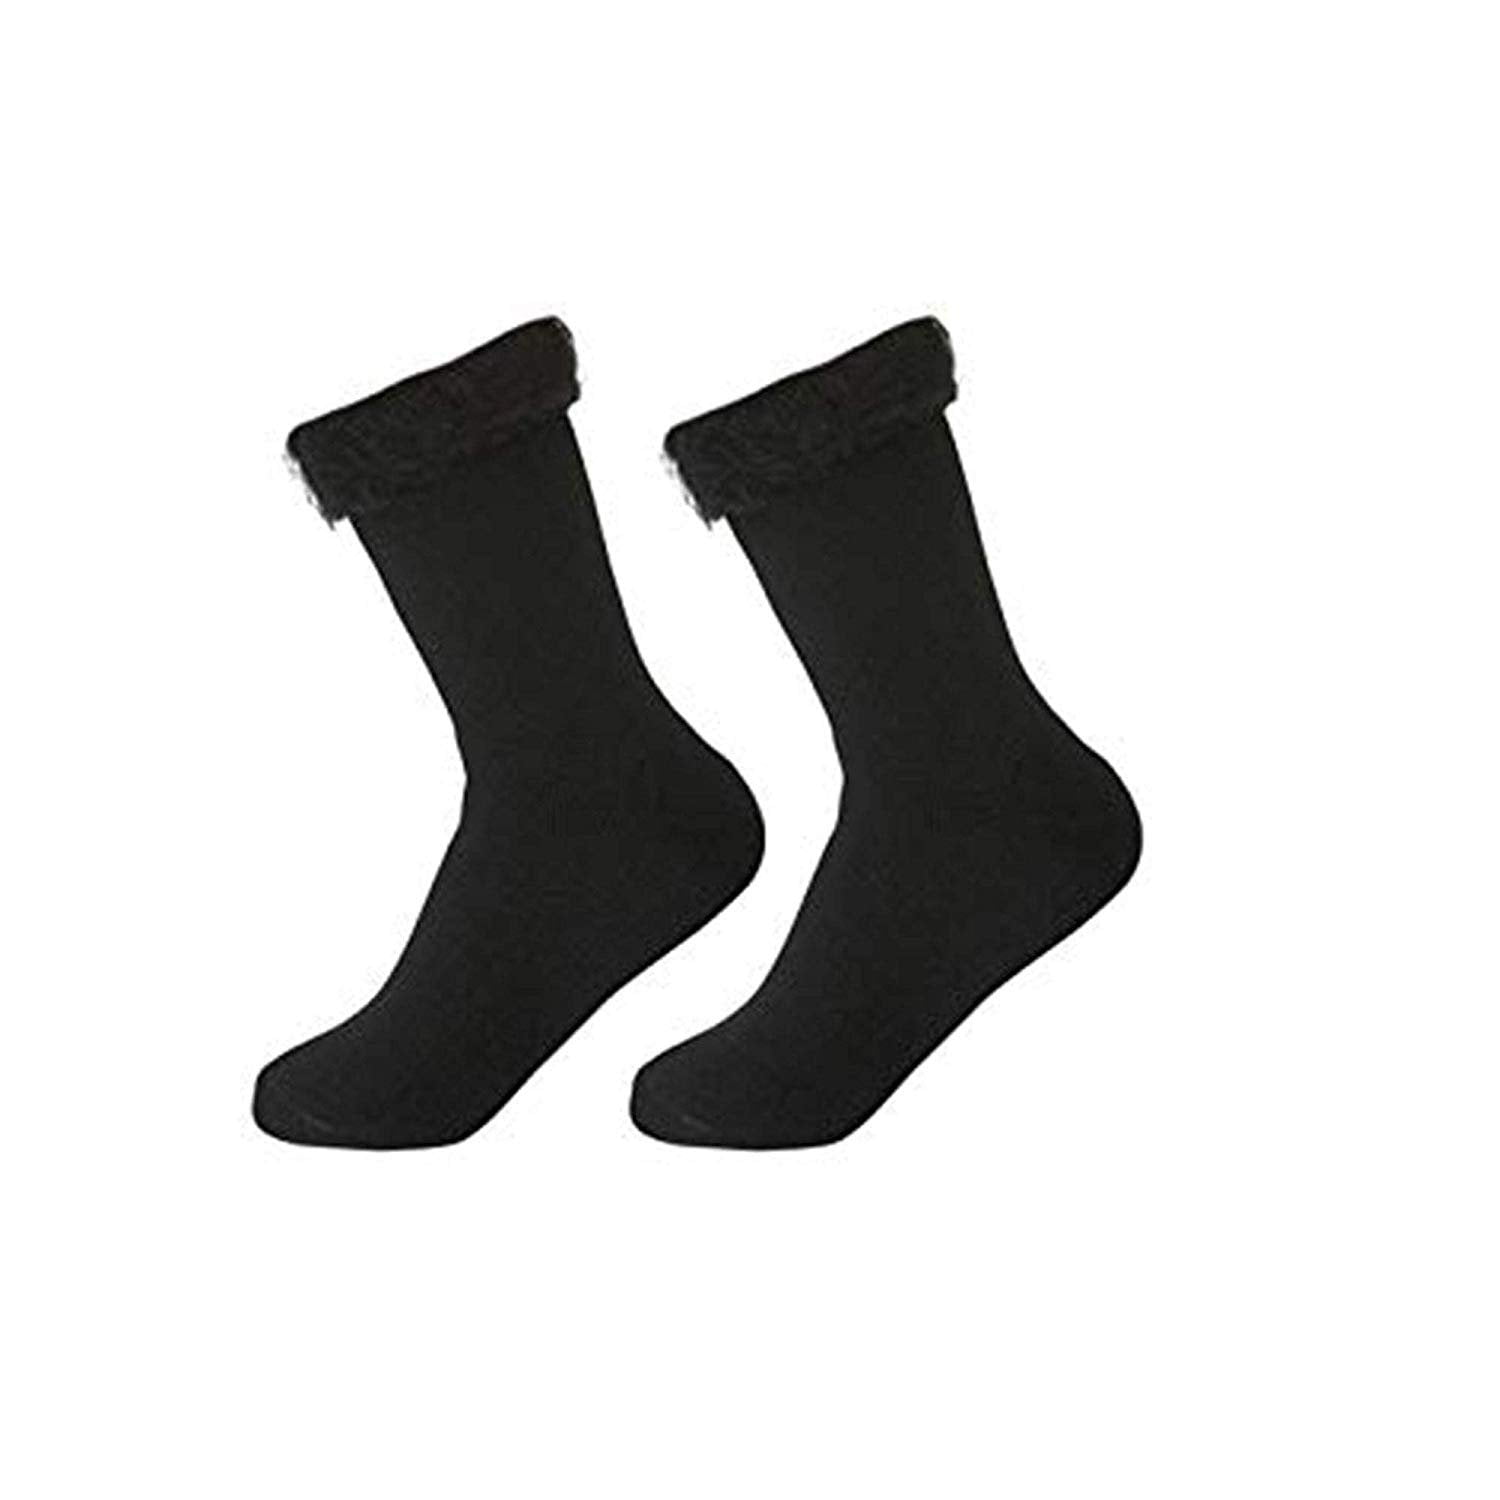 Reflex - REFLEX Brushed Lined Thermal Heat Socks (2-Pairs) - Walmart ...